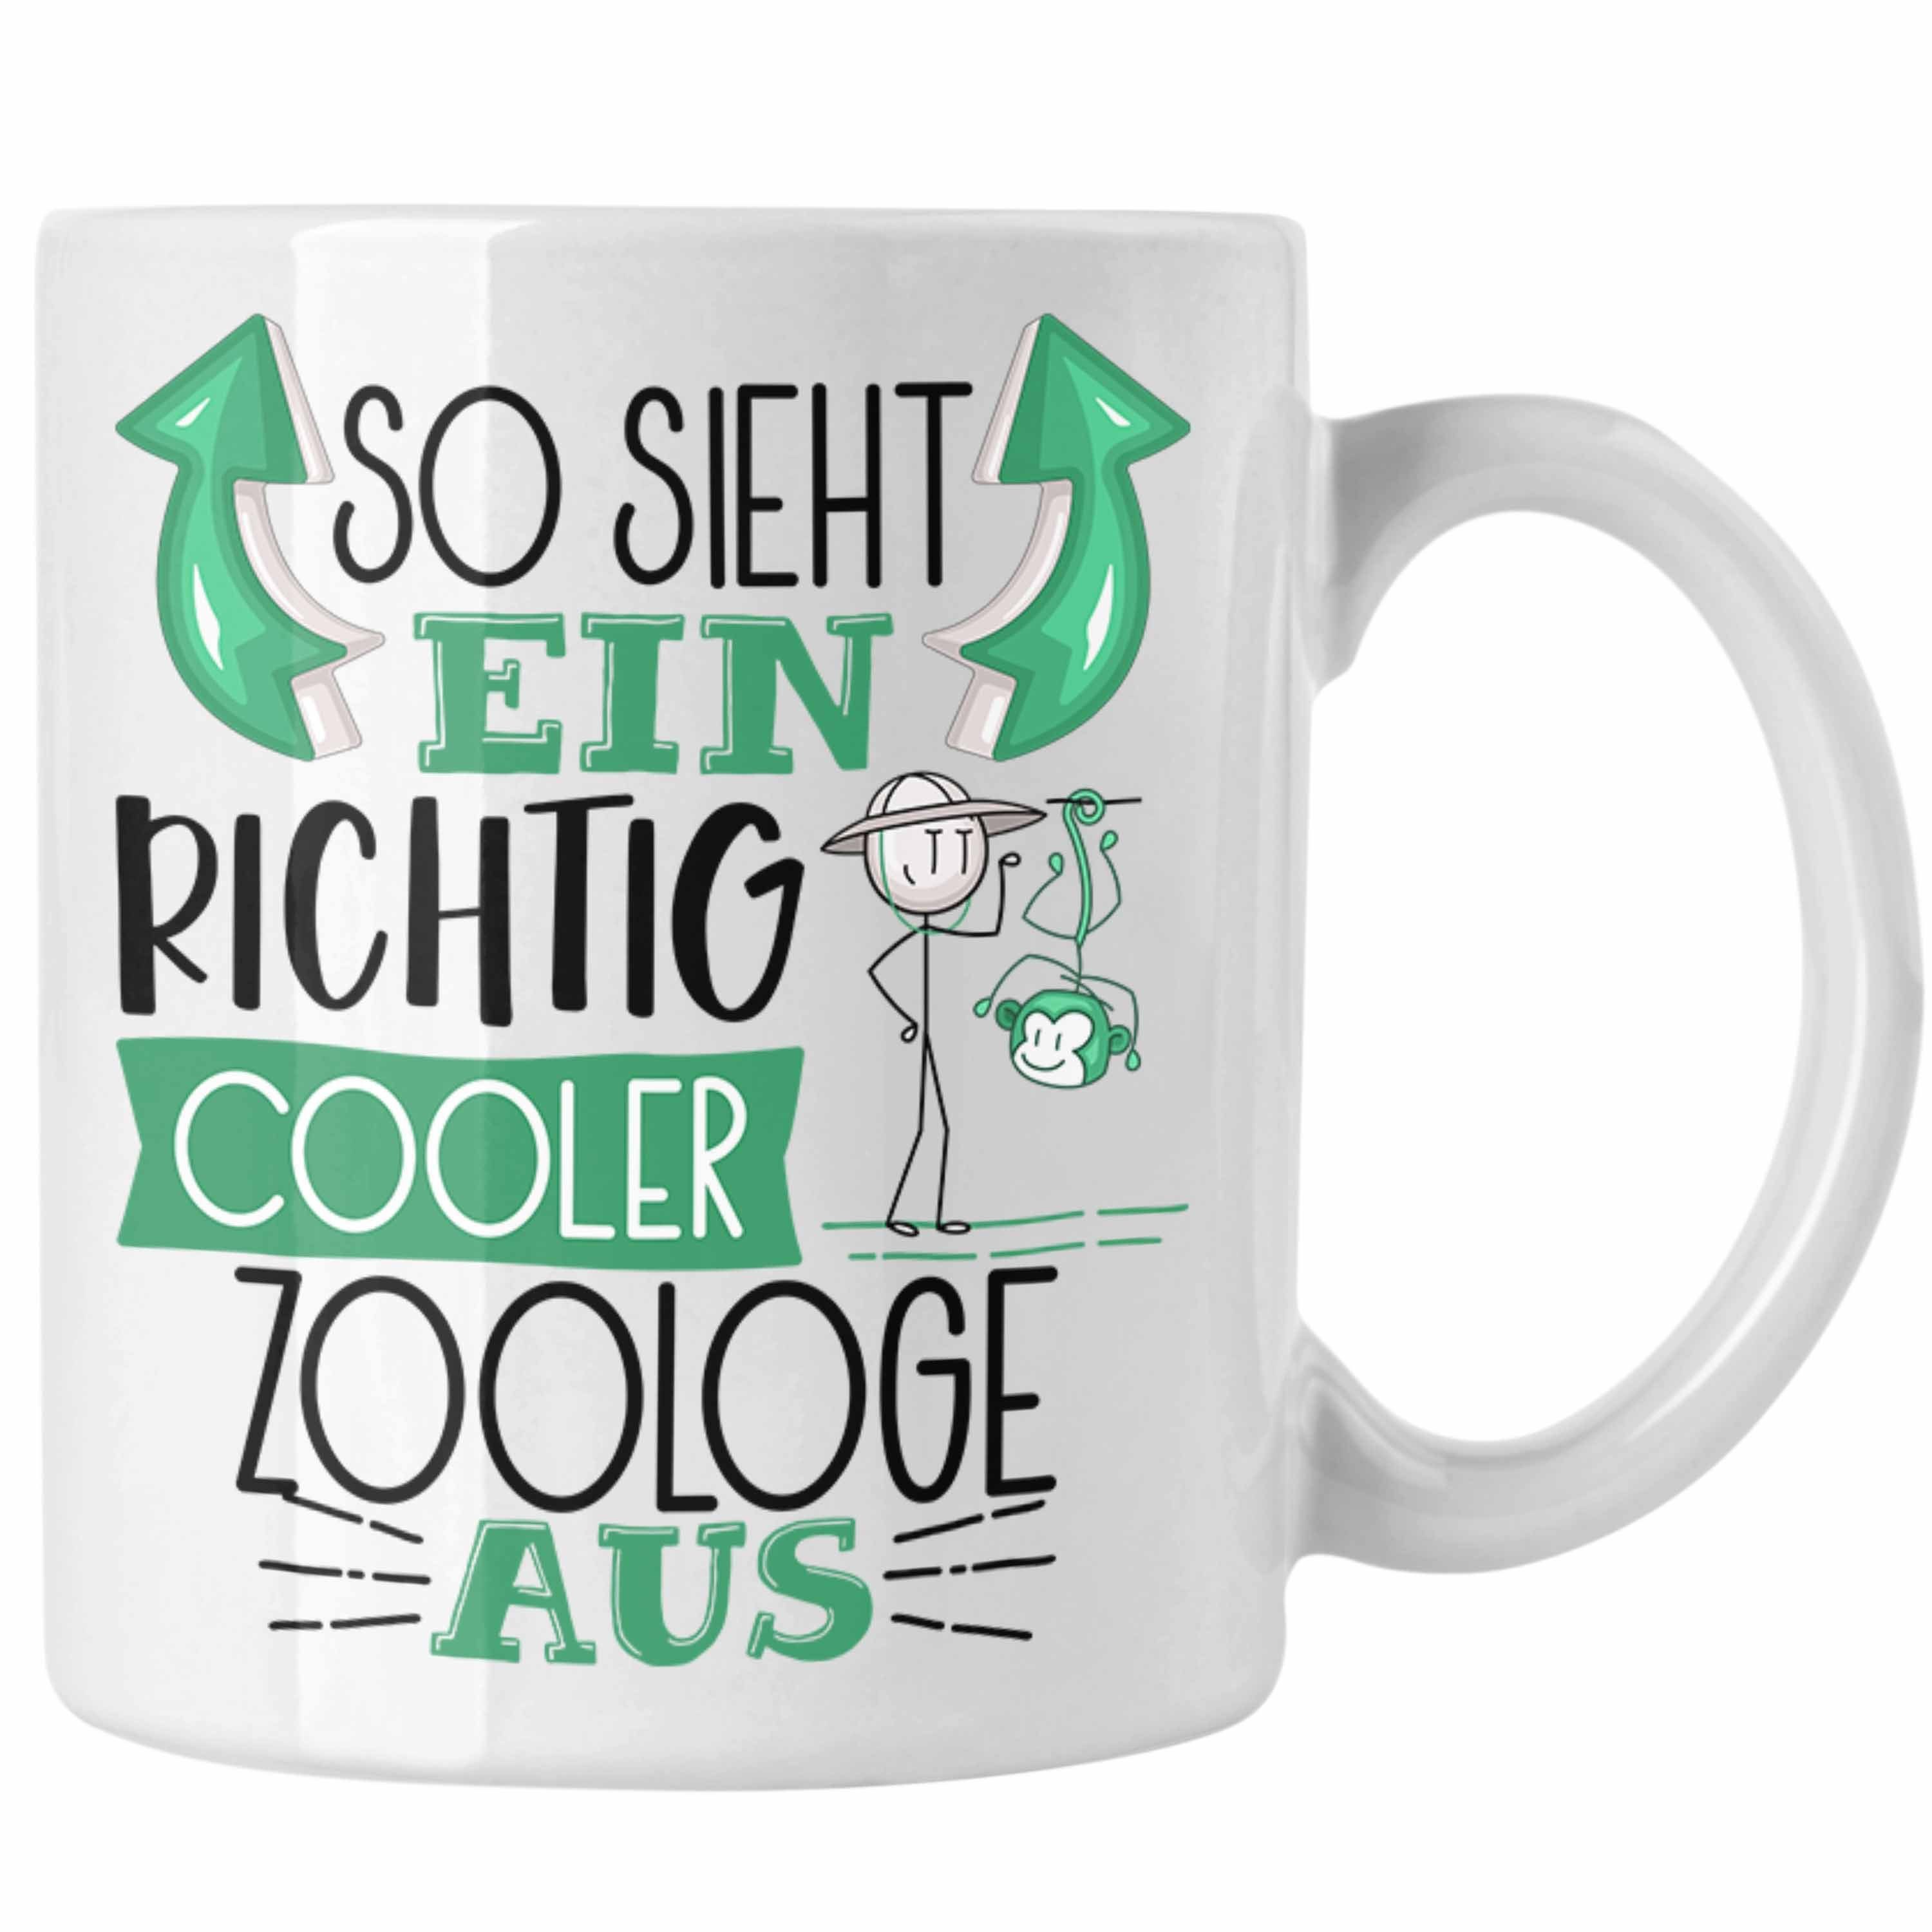 Gesche Trendation Aus Ein Weiss Tasse Zoologe RIchtig Cooler So Sieht Tasse Zoologe Geschenk